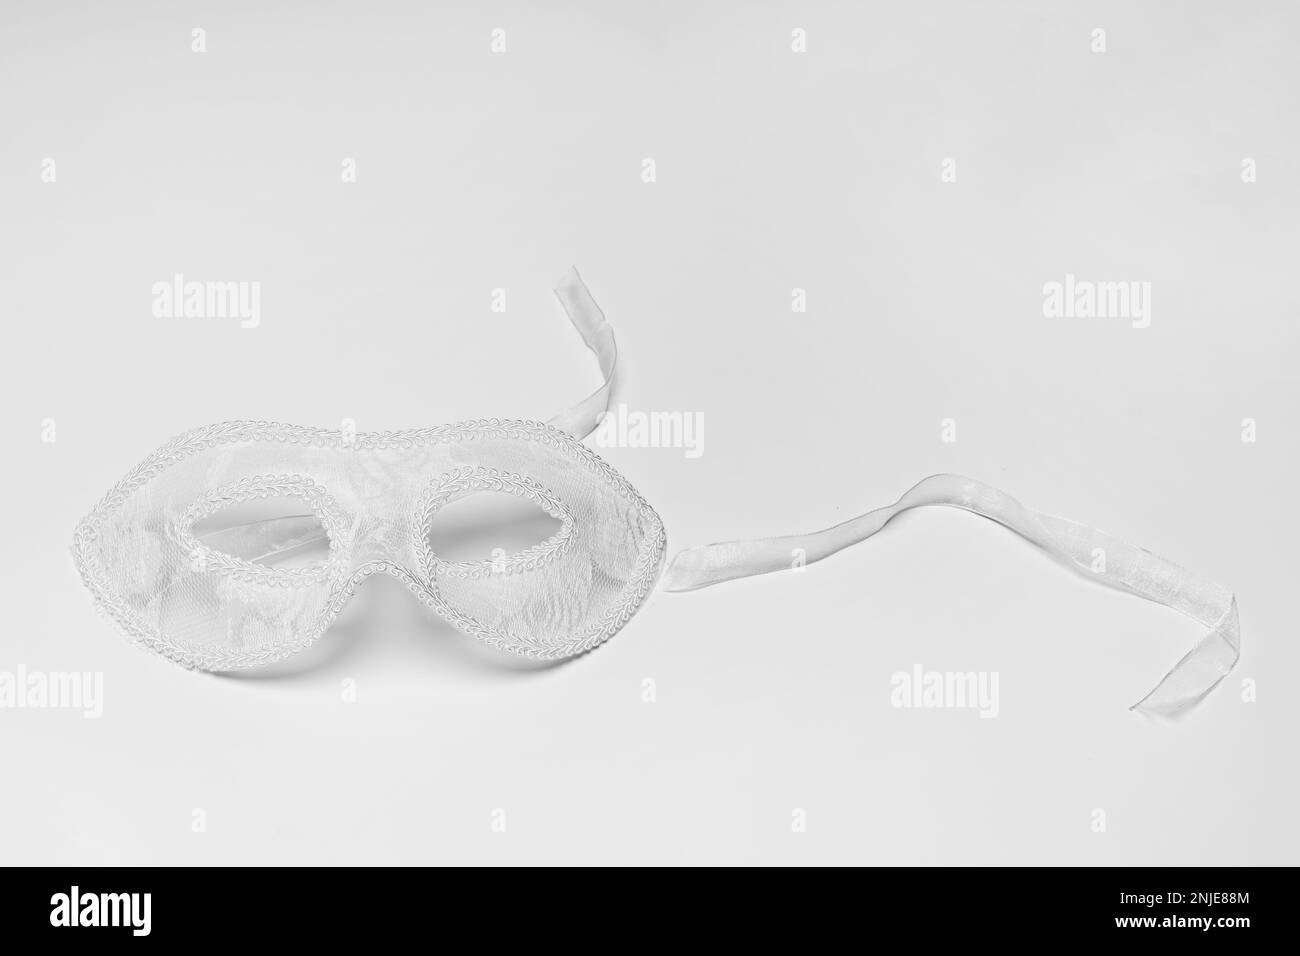 Masques de dentelle blanche sur une surface blanche Banque D'Images